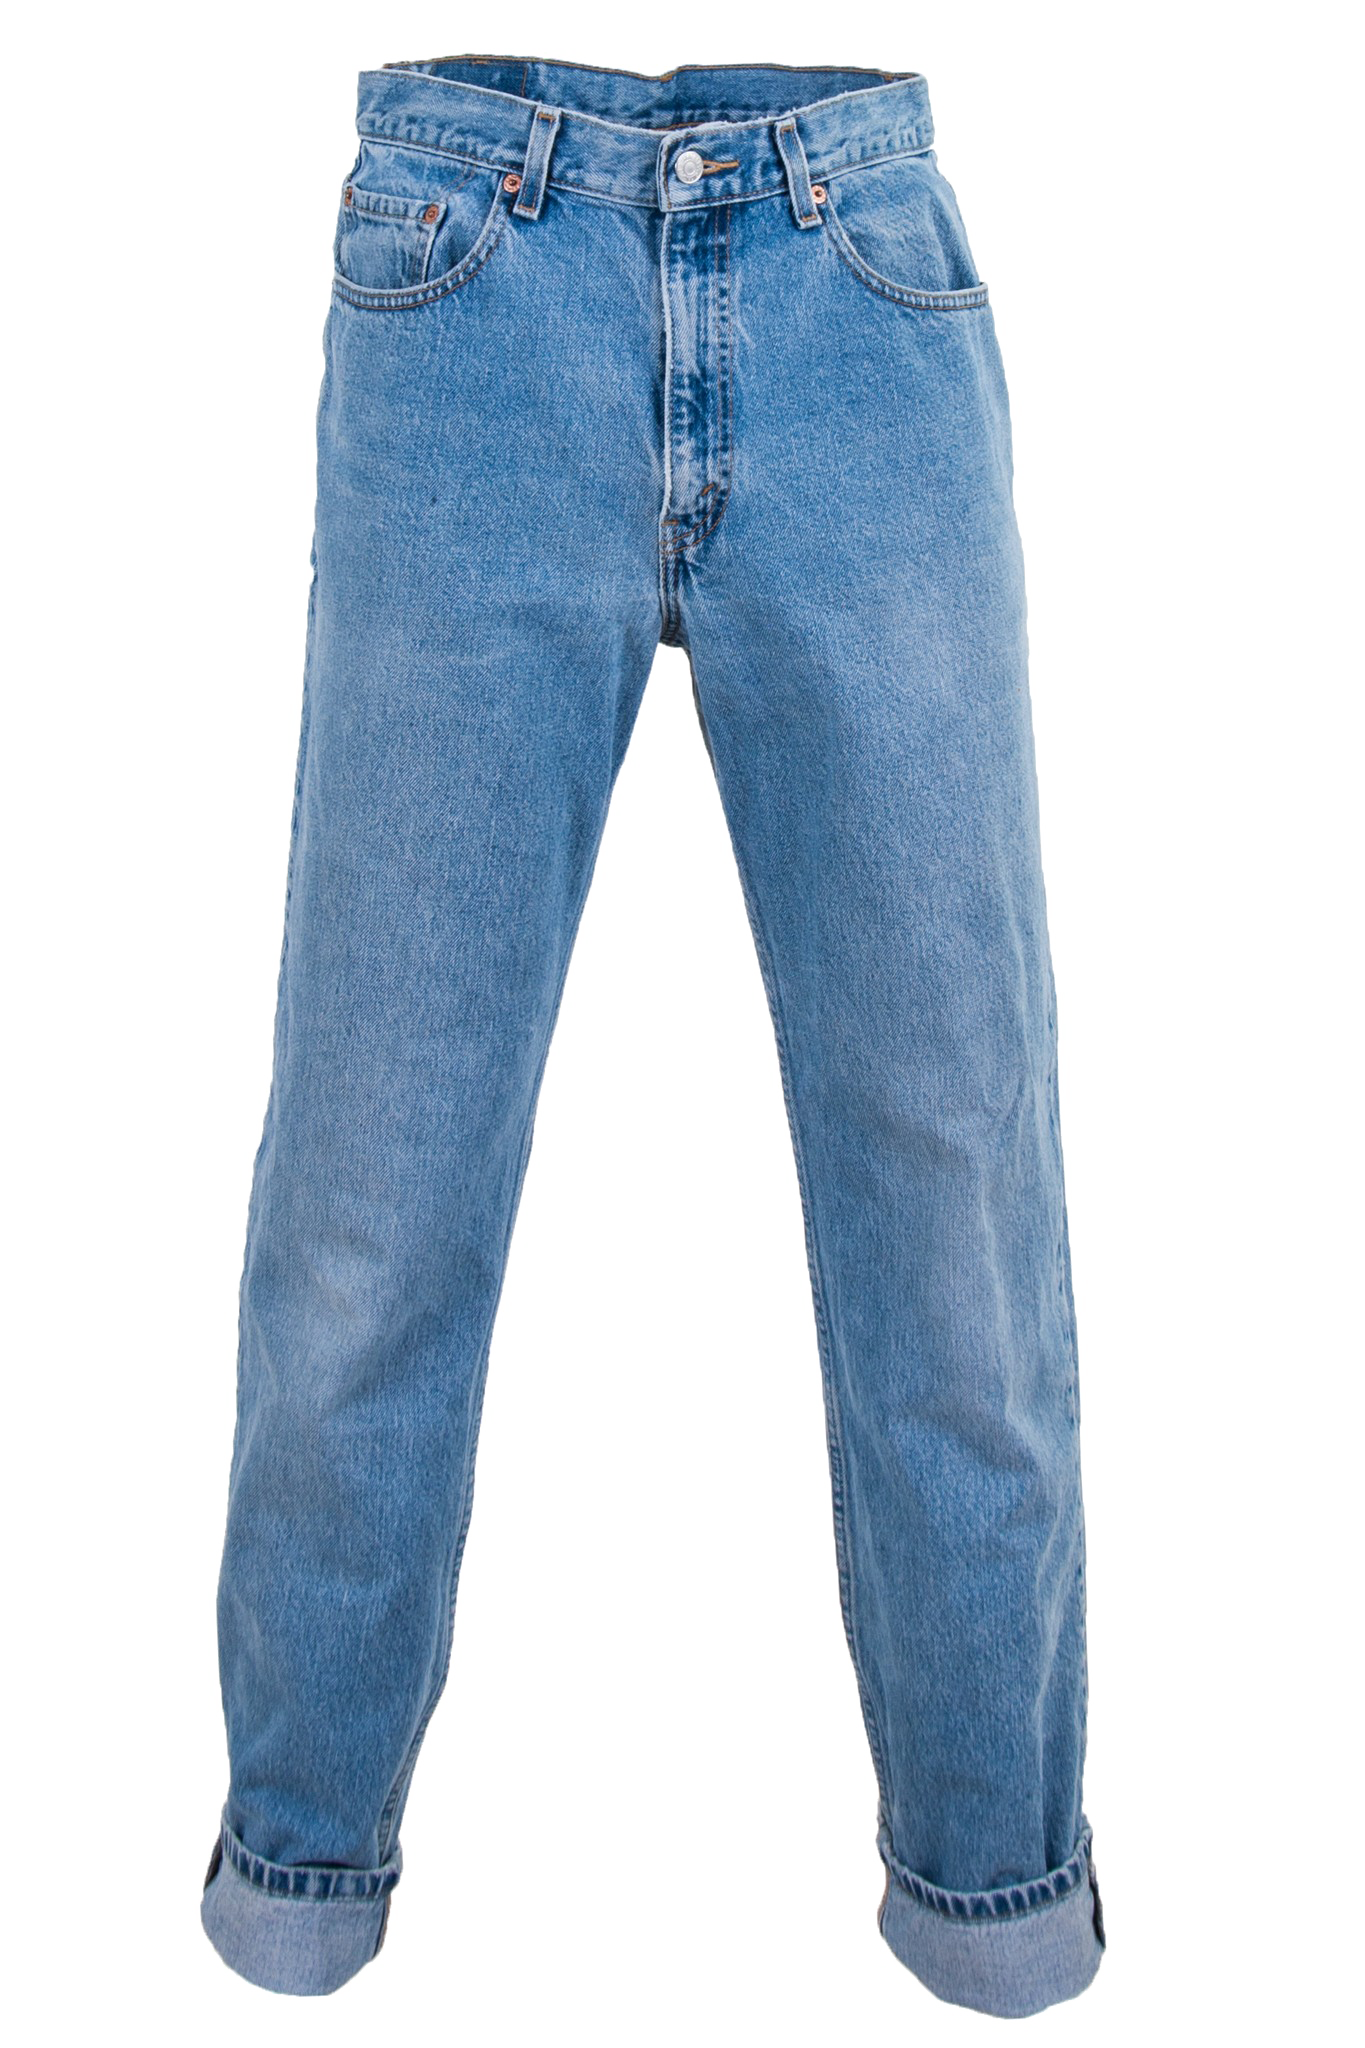 jeans clip art